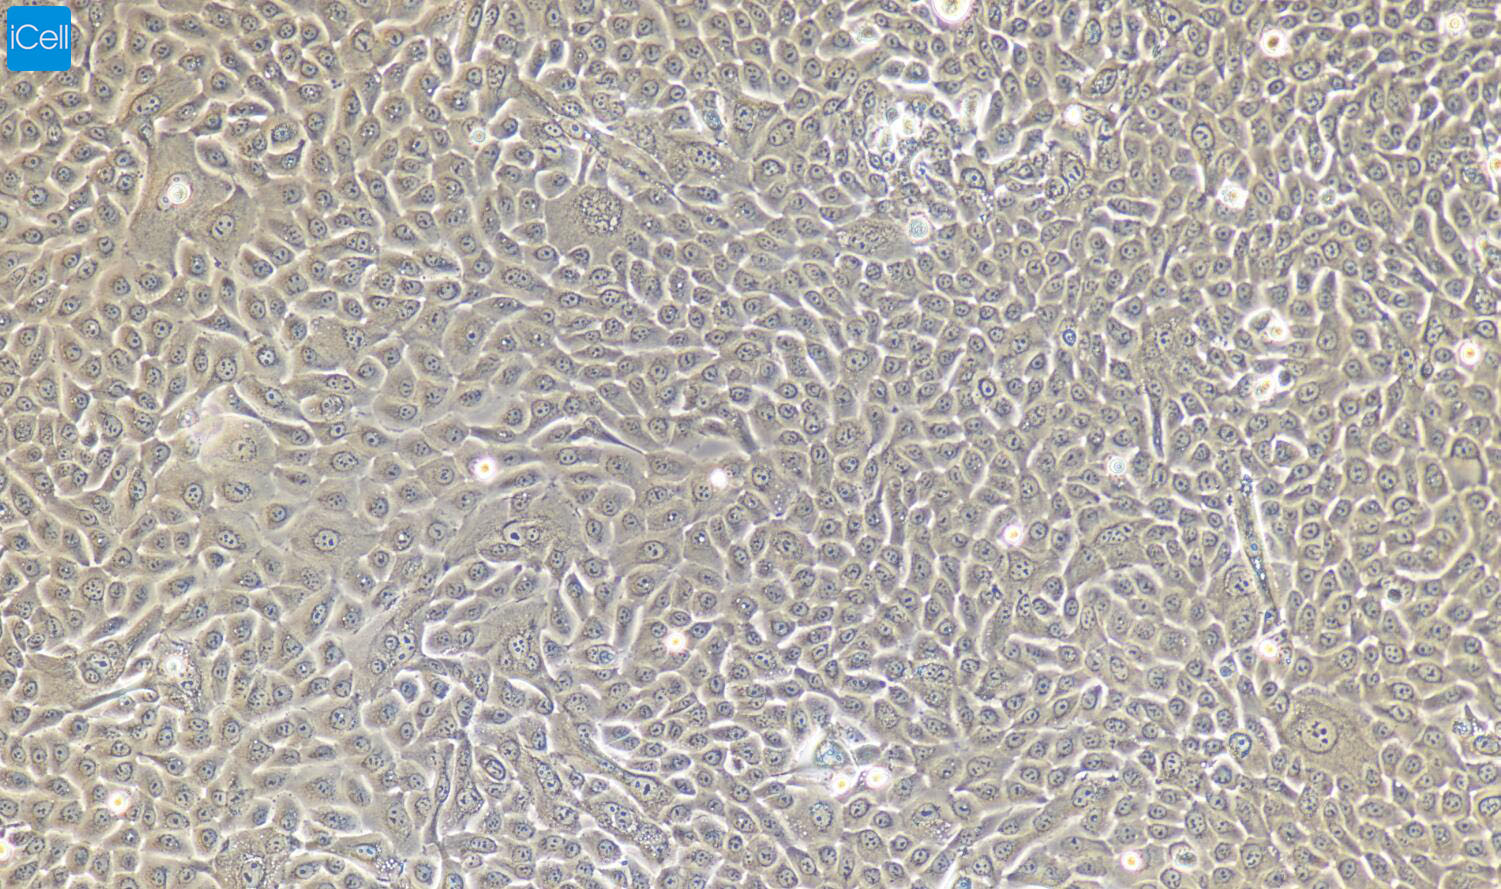 小鼠膀胱上皮细胞 免疫荧光鉴定 镜像绮点（Cellverse）